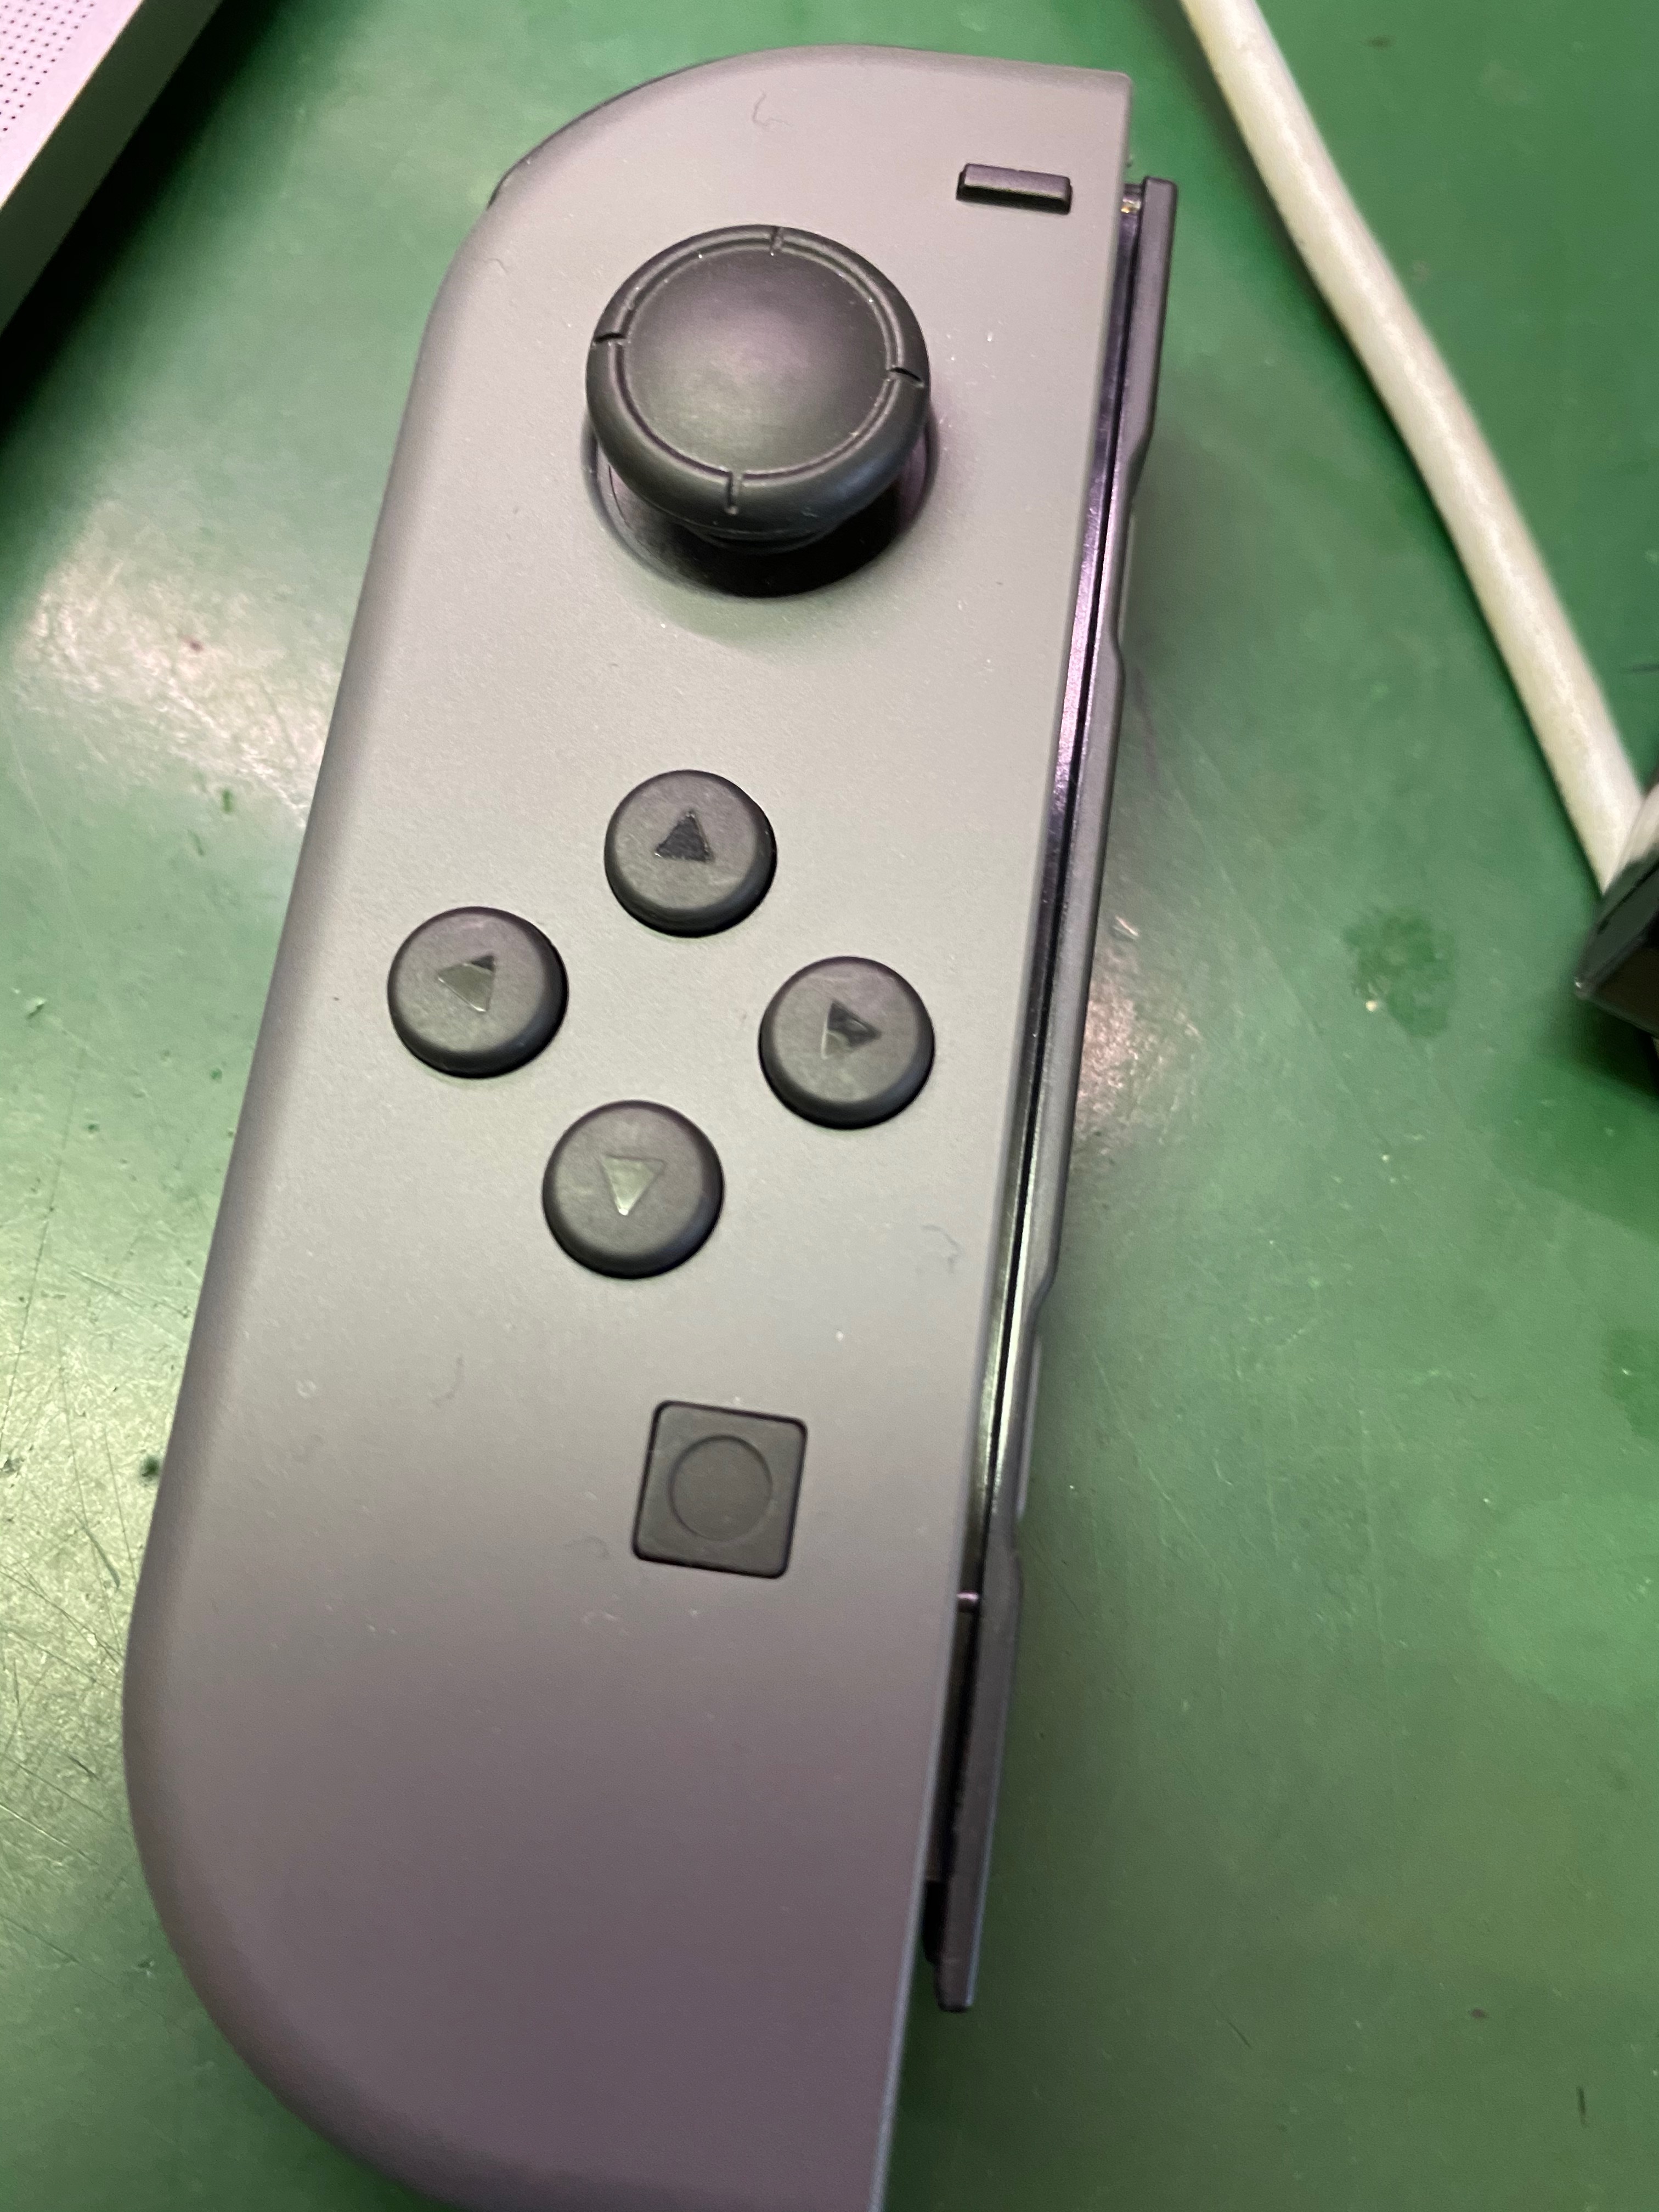 本体に装着してもジョイコンの操作ができない ニンテンドースイッチ Nintendo Switch ジョイコンスライドレール修理 Nintendo3ds Switch Psp 修理のゲームホスピタル Nintendo3ds ニンテンドーds Psp Switch 修理